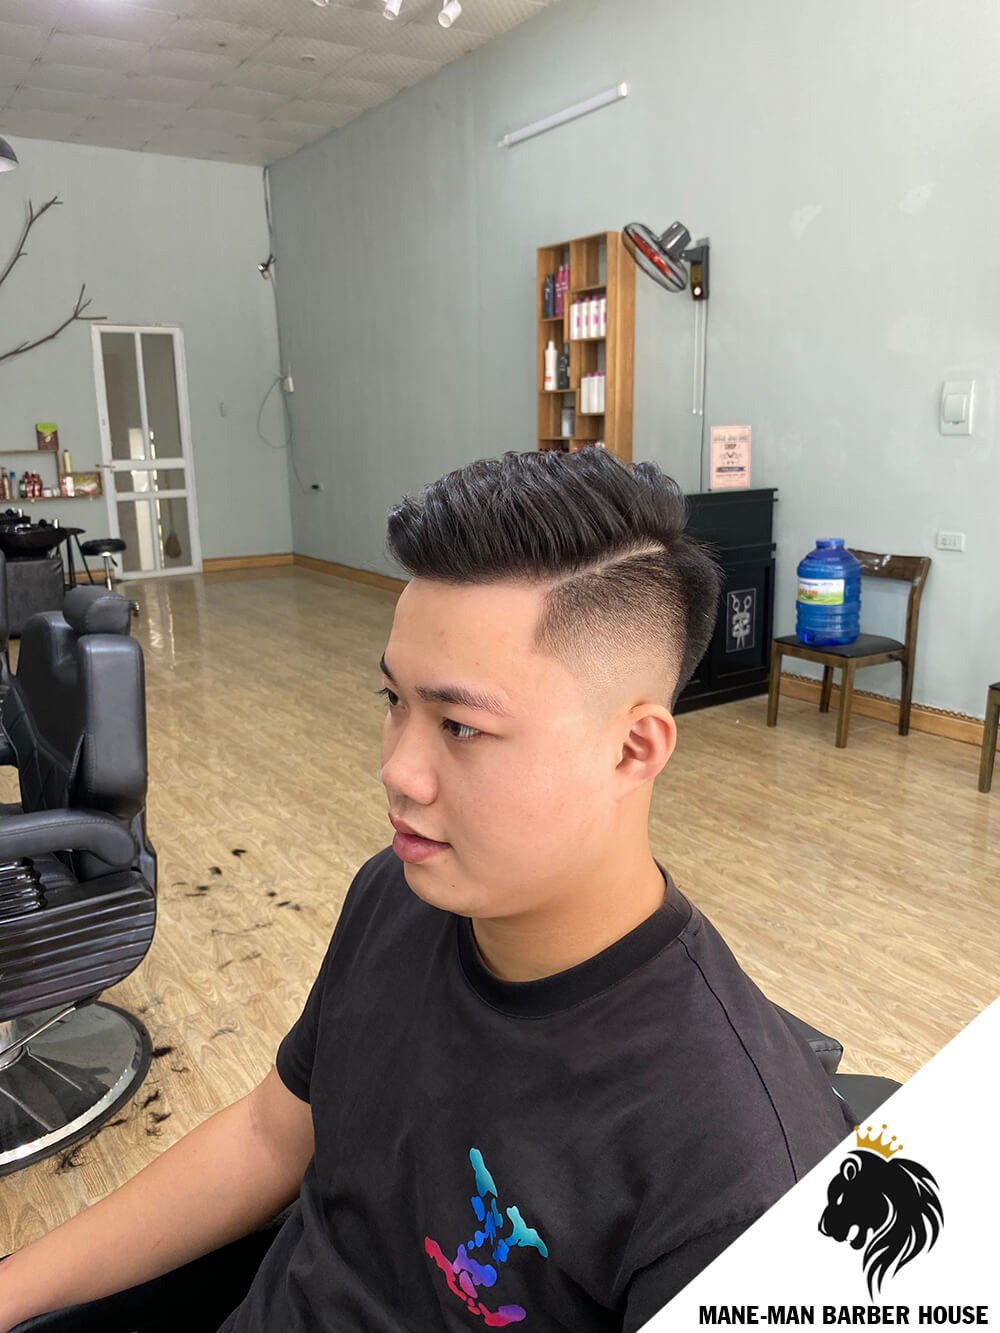 Kiểu tóc Undercut  Cắt tóc nam đẹp 2020  Chính Barber Shop  YouTube